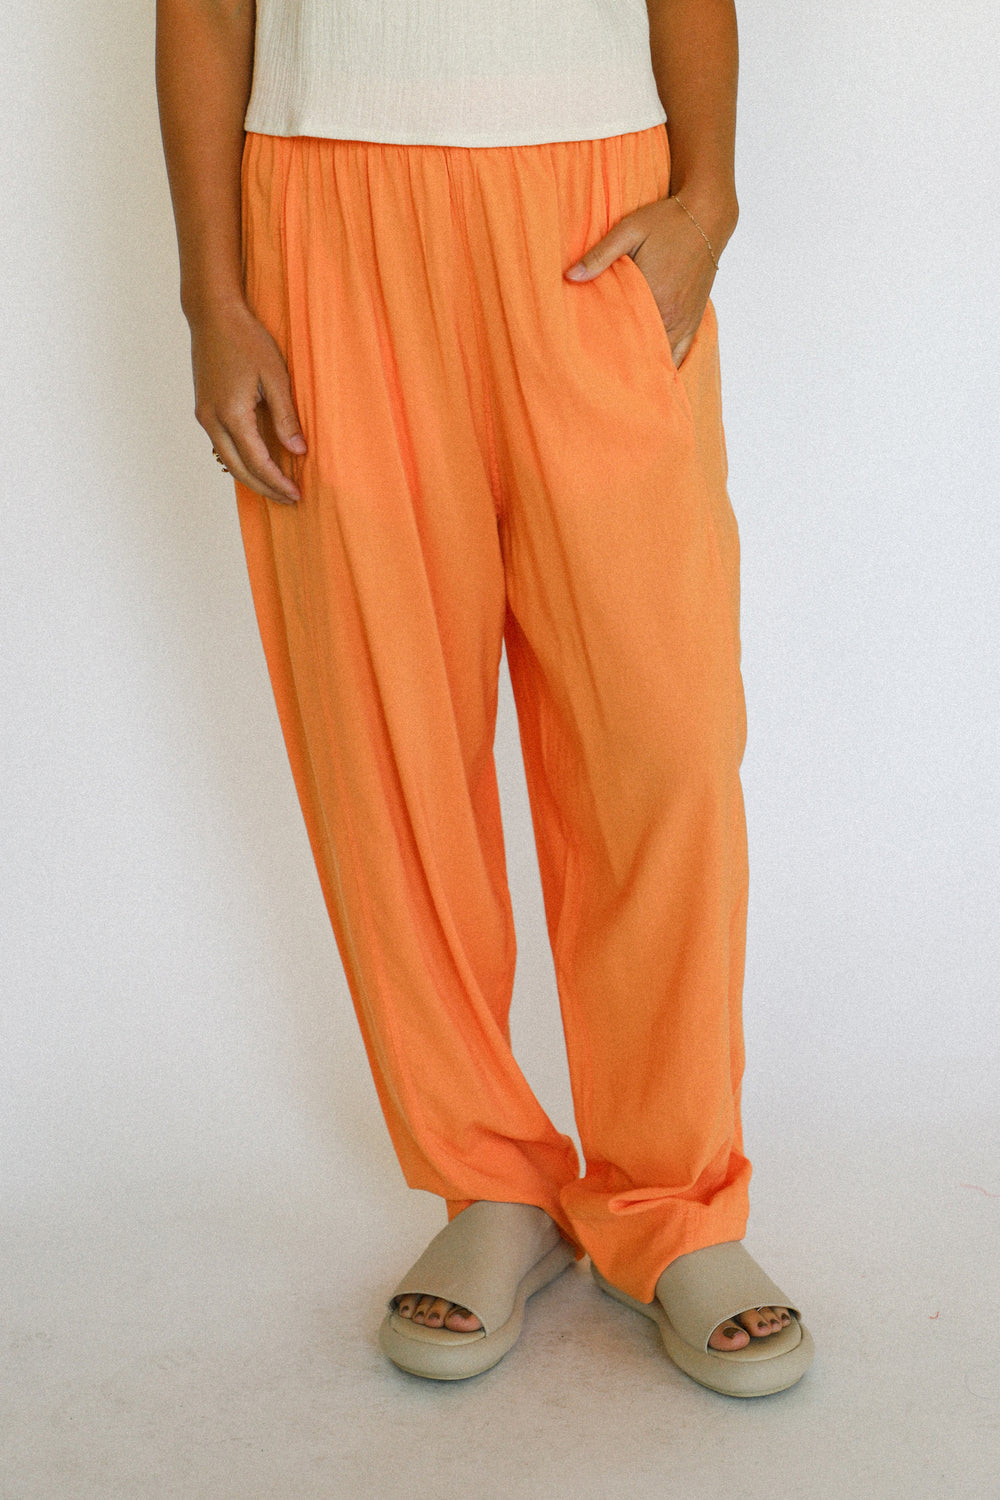 Orange Sherbet Pant